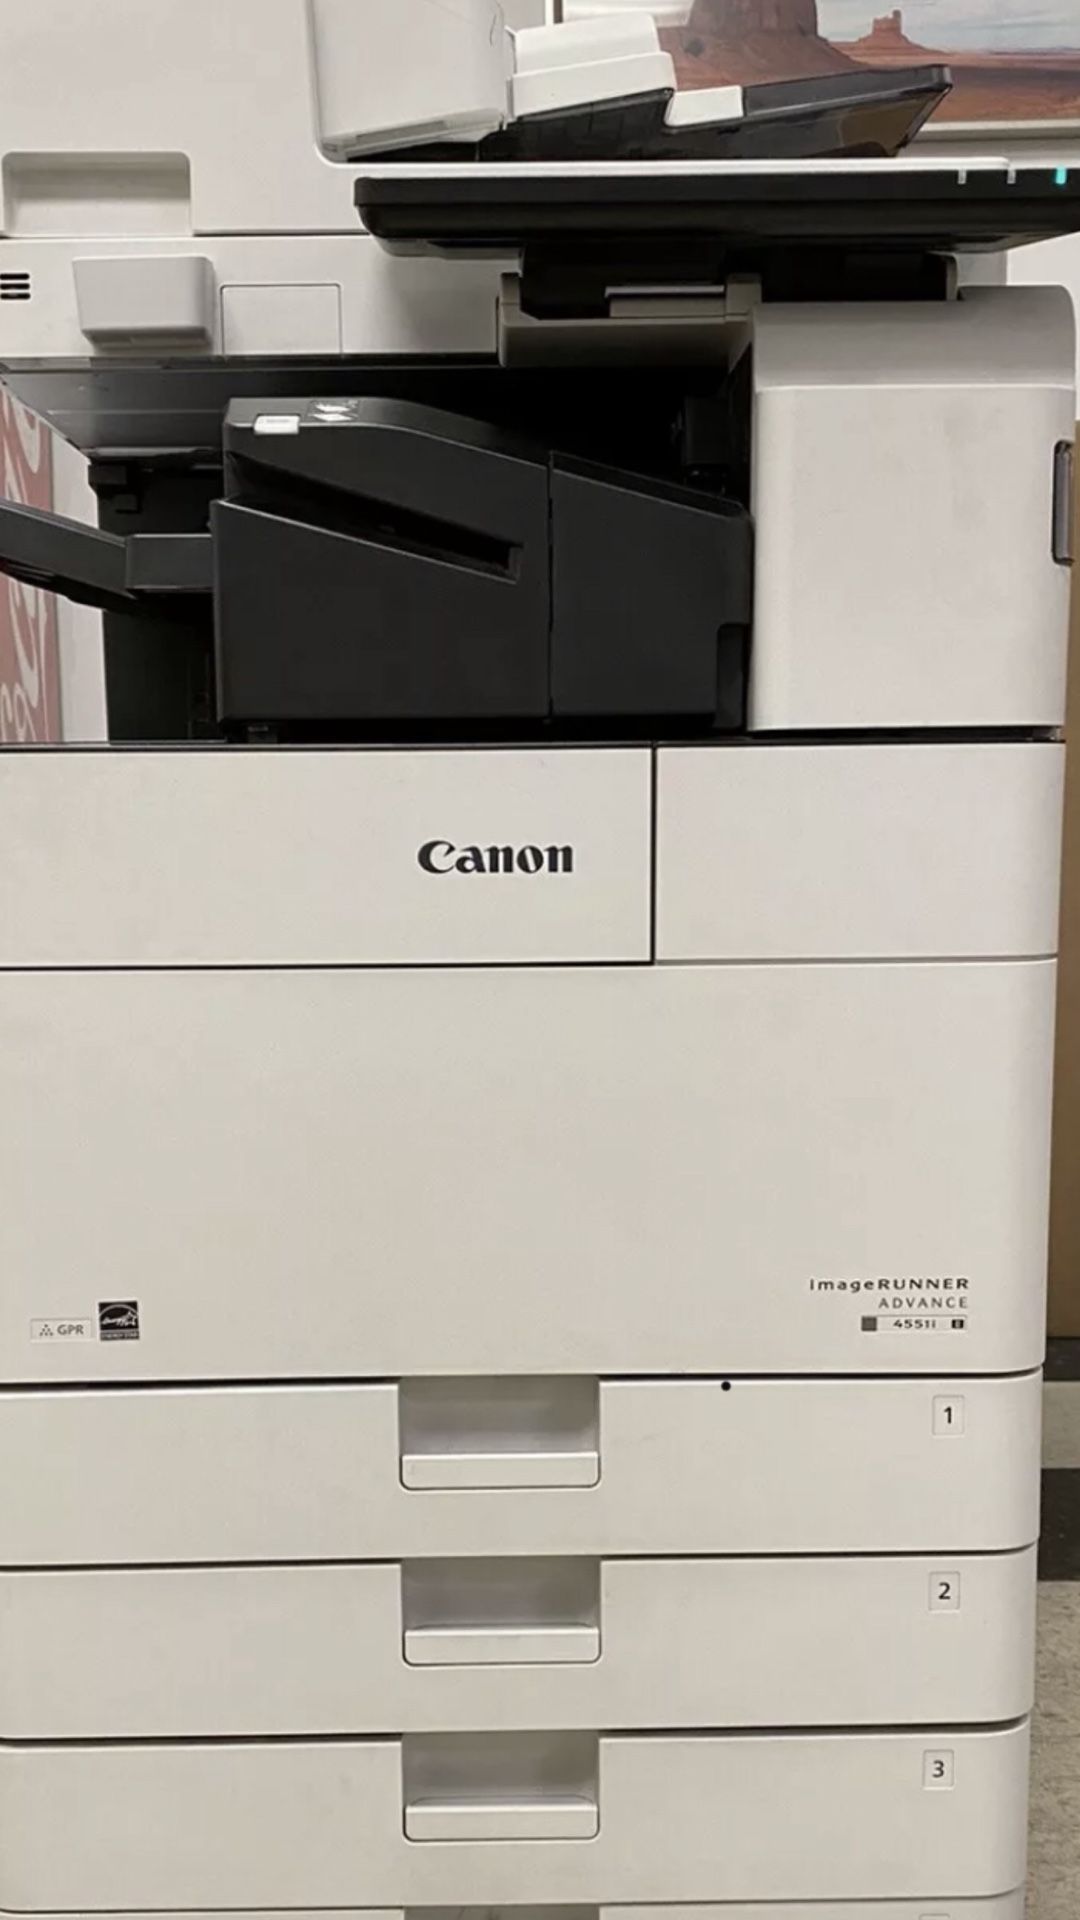 Canon image-runner advance 4551I